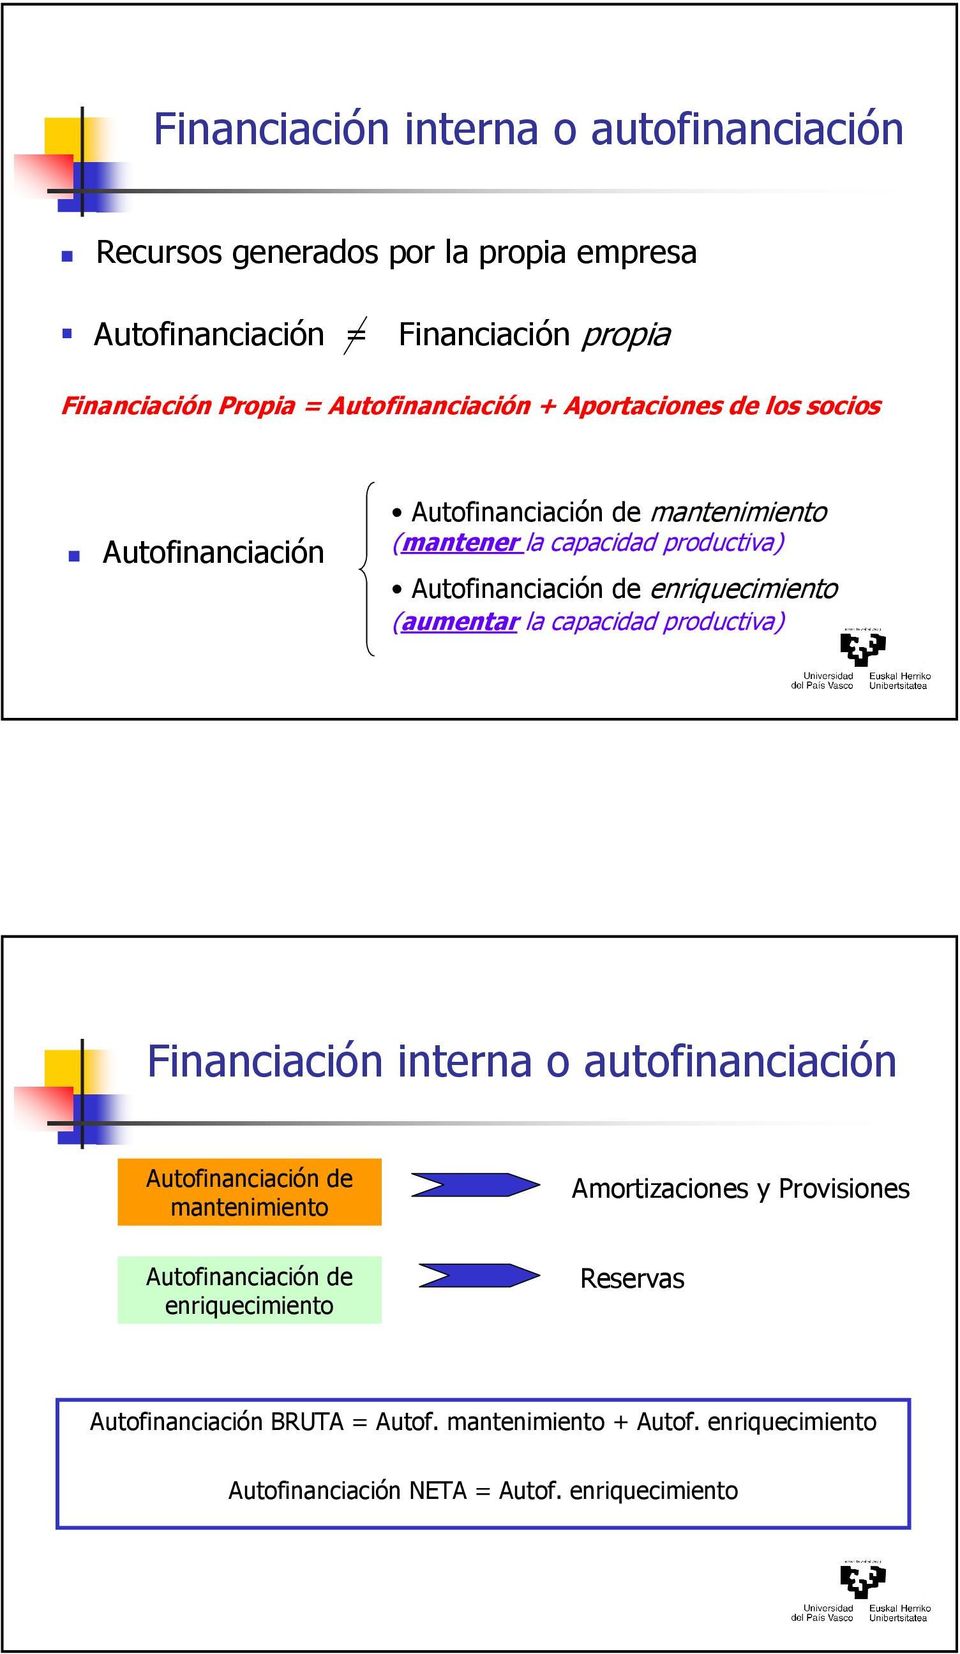 enriquecimiento (aumentar la capacidad productiva) Financiación interna o autofinanciación Autofinanciación de mantenimiento Amortizaciones y